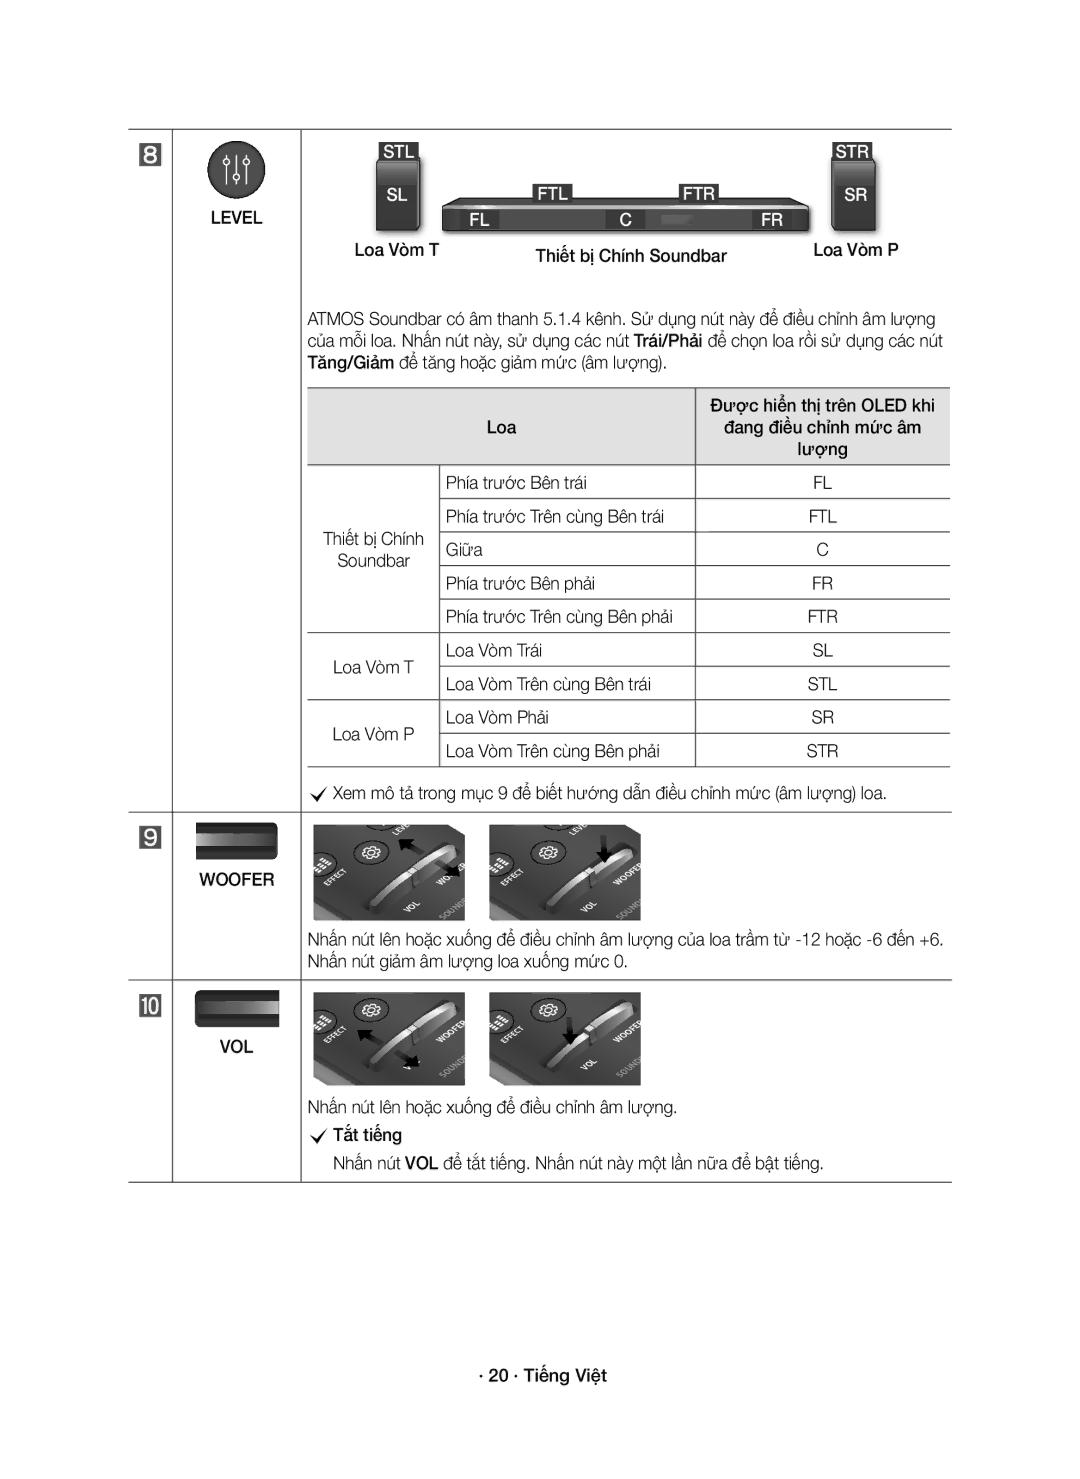 Samsung HW-K950/XV manual Phía trước Trên cùng Bên trái, Giữa, Phía trước Bên phải Phía trước Trên cùng Bên phải 